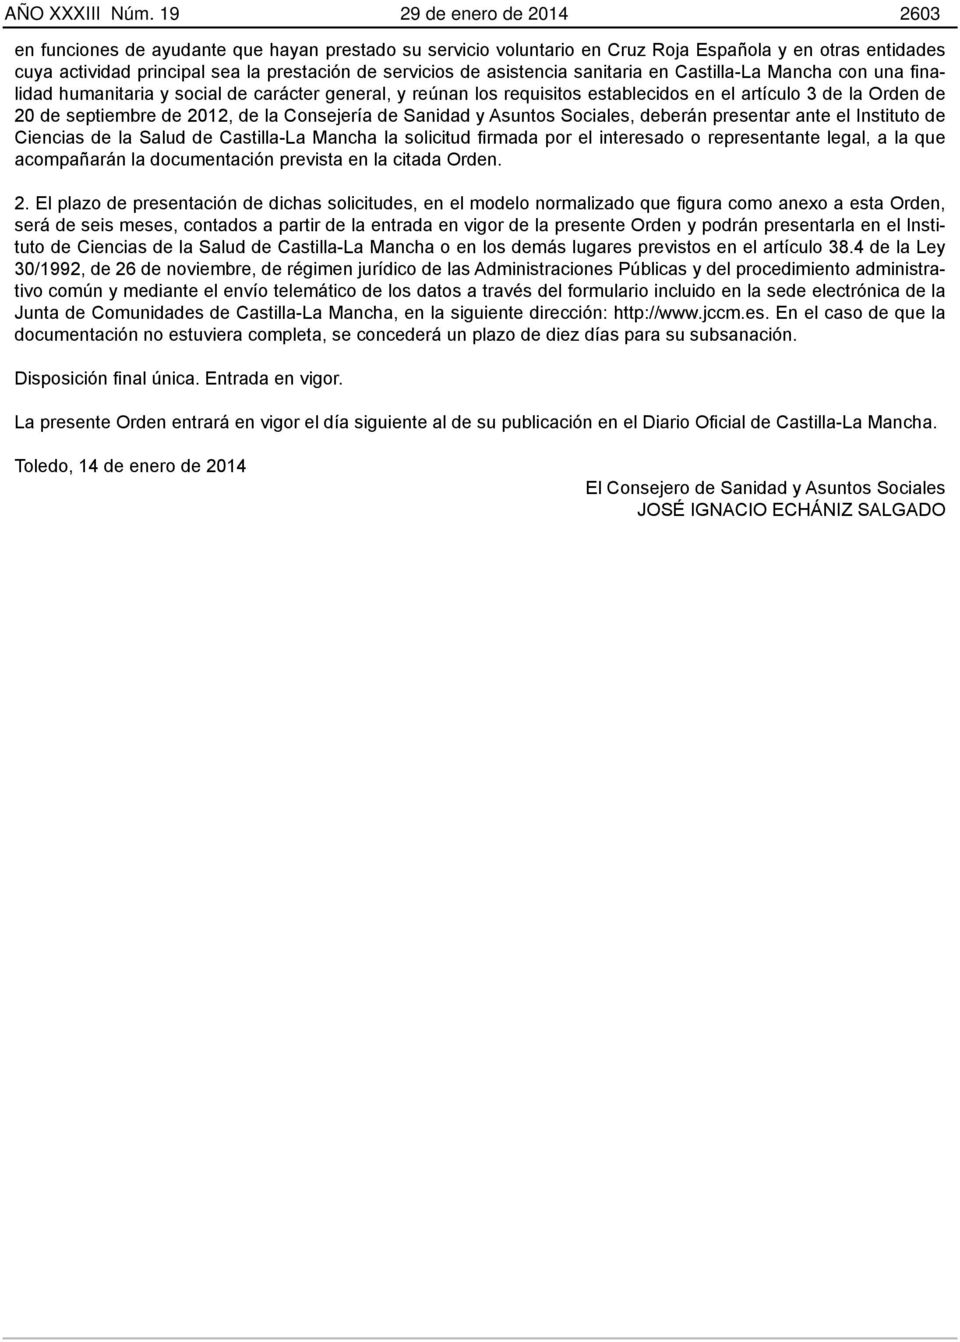 asistencia sanitaria en Castilla-La Mancha con una finalidad humanitaria y social de carácter general, y reúnan los requisitos establecidos en el artículo 3 de la Orden de 20 de septiembre de 2012,